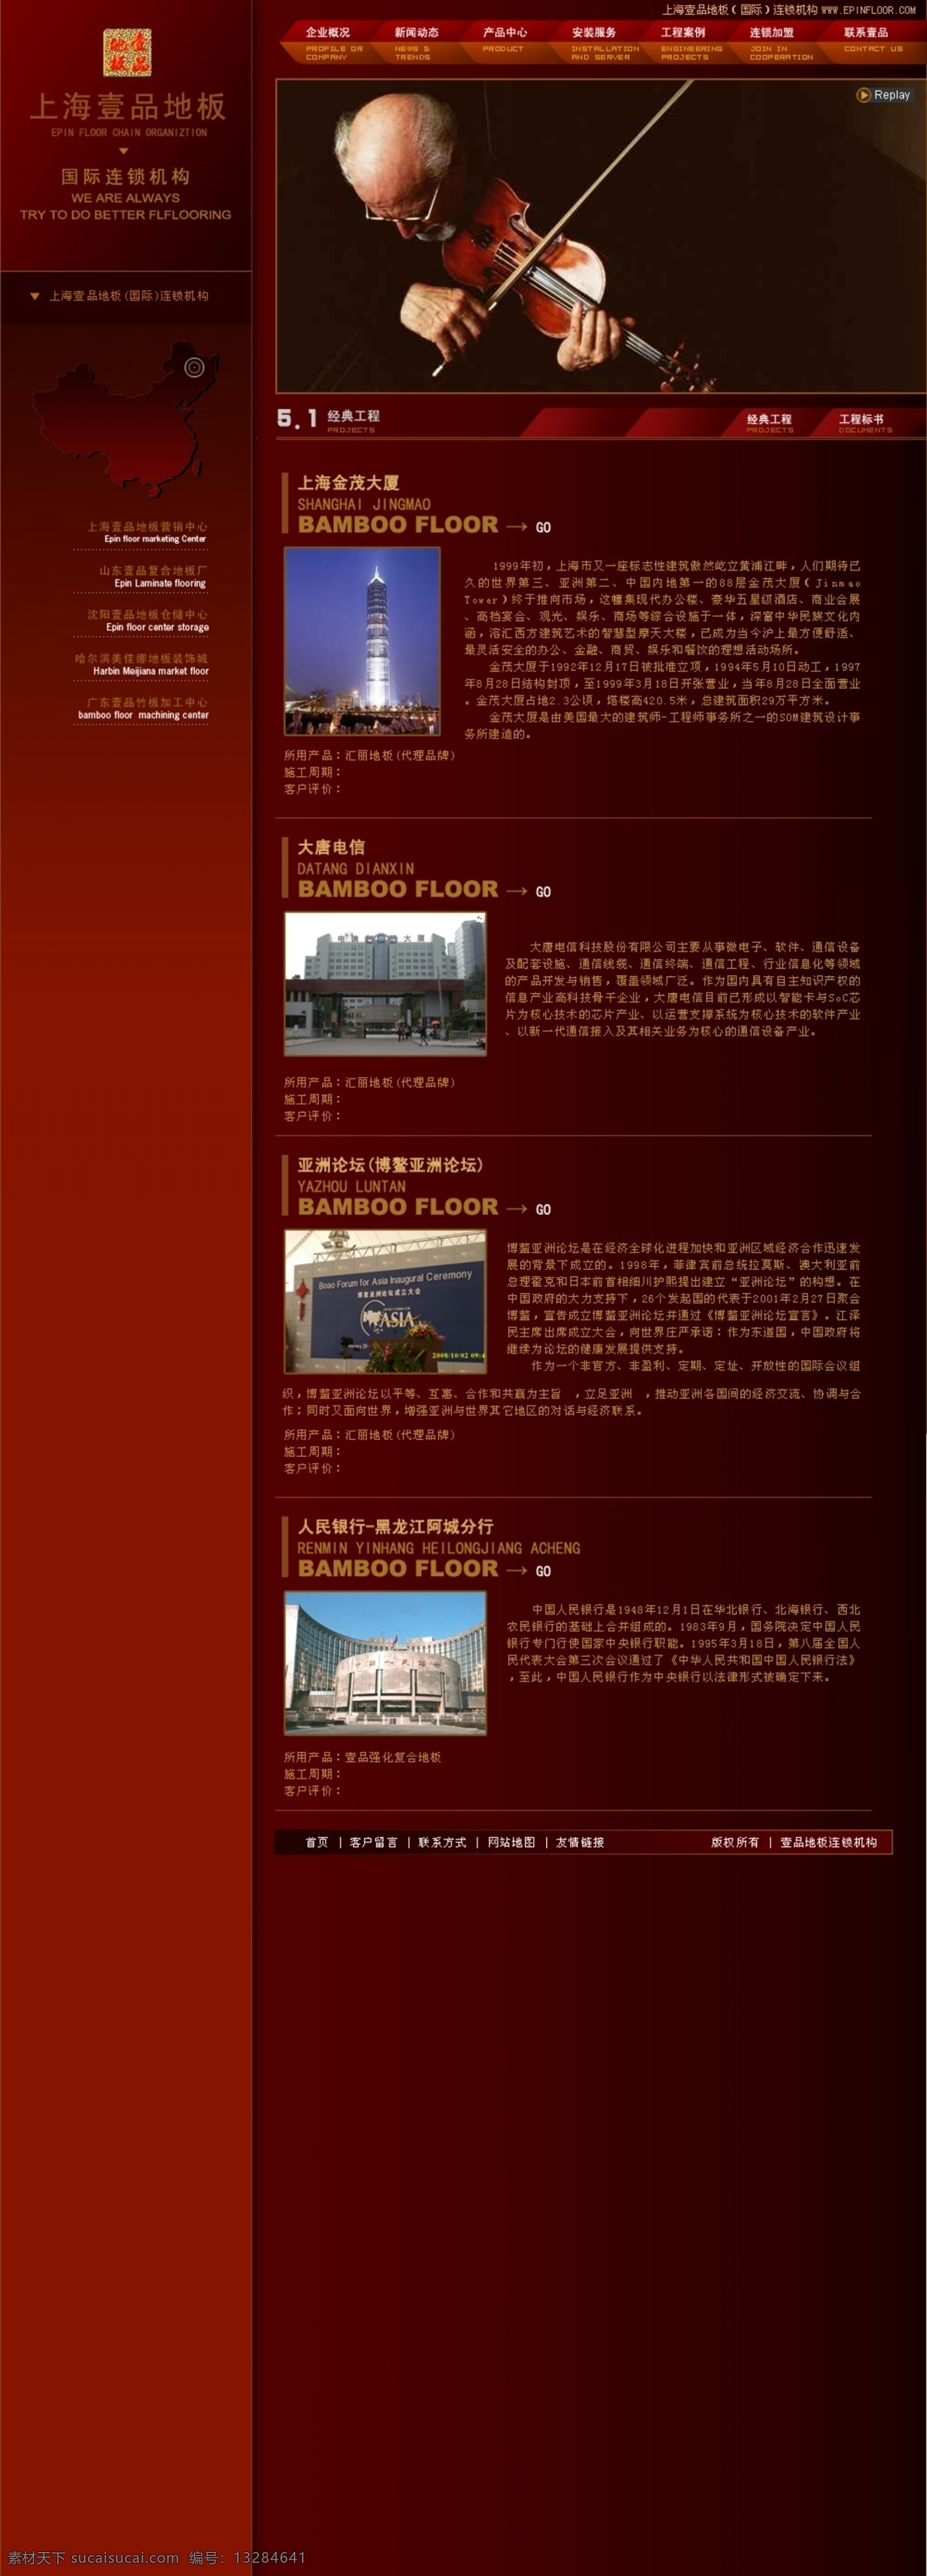 壹 品 地板 国际连锁 六 版 工程 案例 网页模板 源文件库 中文模版 家居装饰素材 室内设计